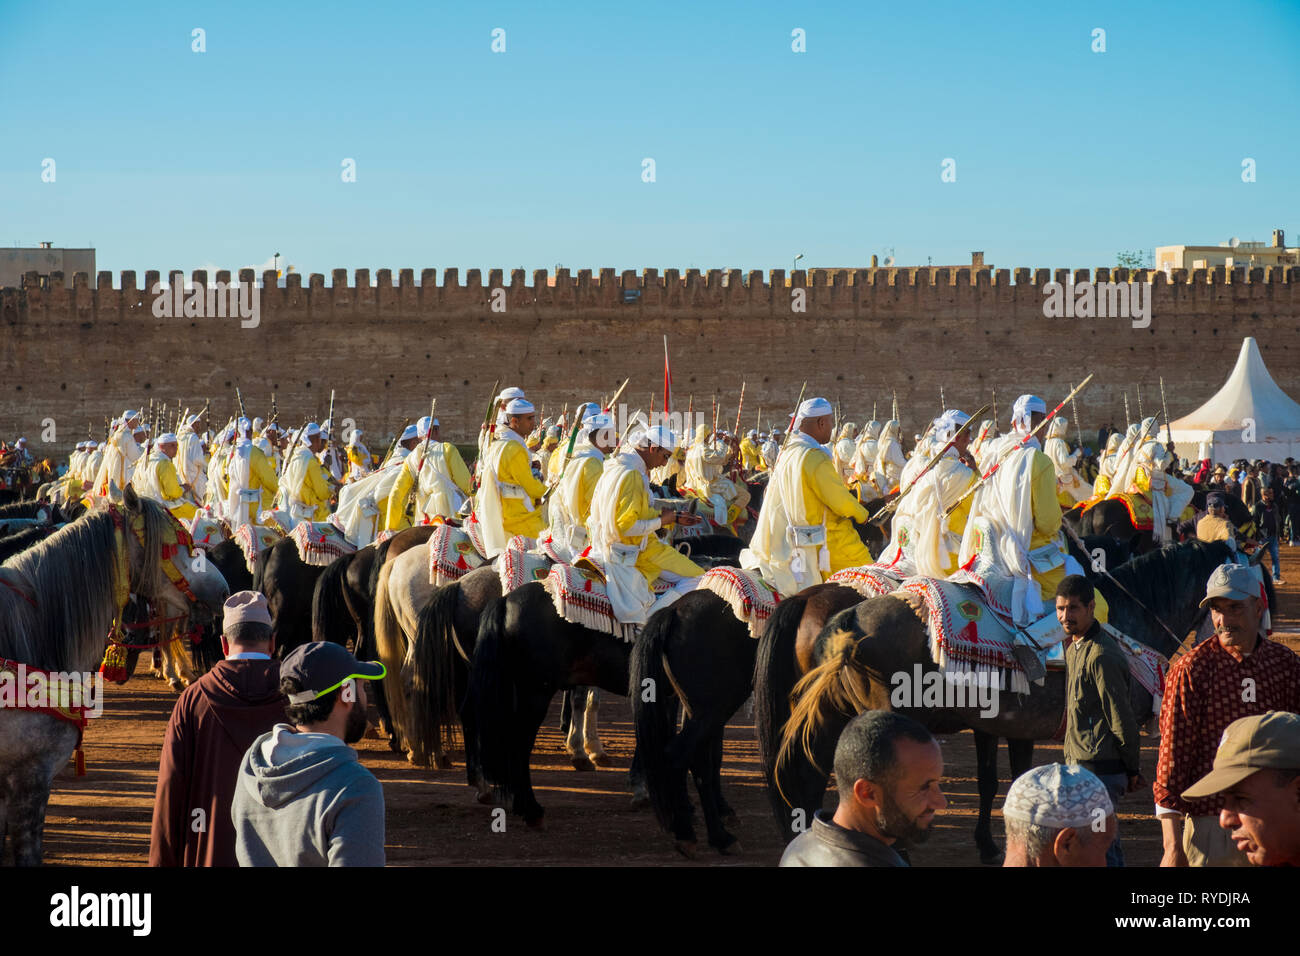 Meknes, Maroc - 31 mars 2018 : groupe tribal en uniforme avec des fusils montés sur des chevaux en attente de Tbourida Fantasia près de médina de Meknès, Maroc mur Banque D'Images